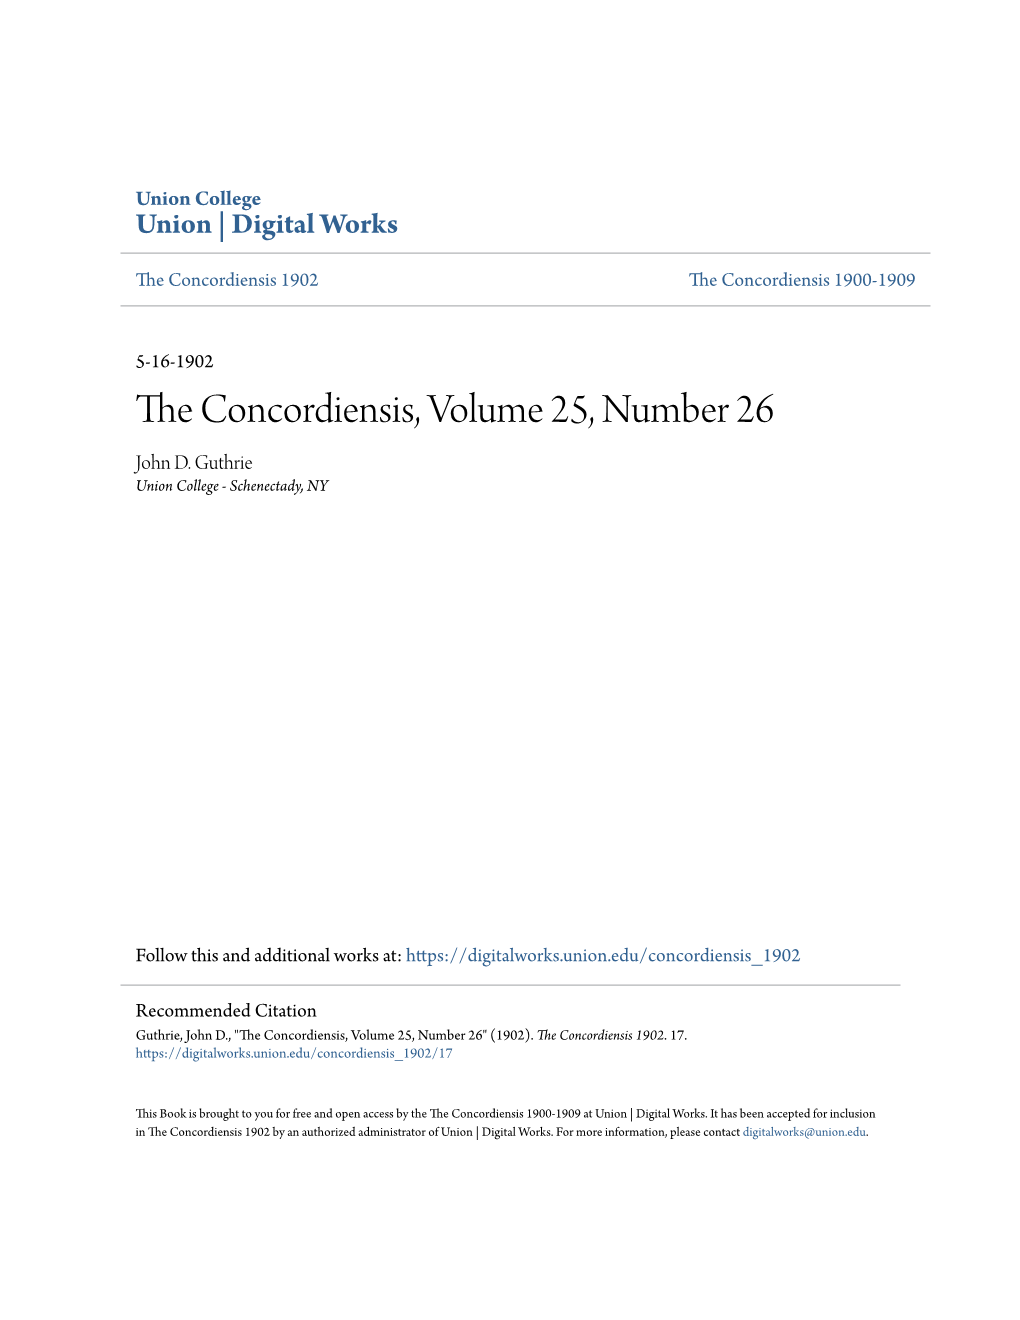 The Concordiensis, Volume 25, Number 26